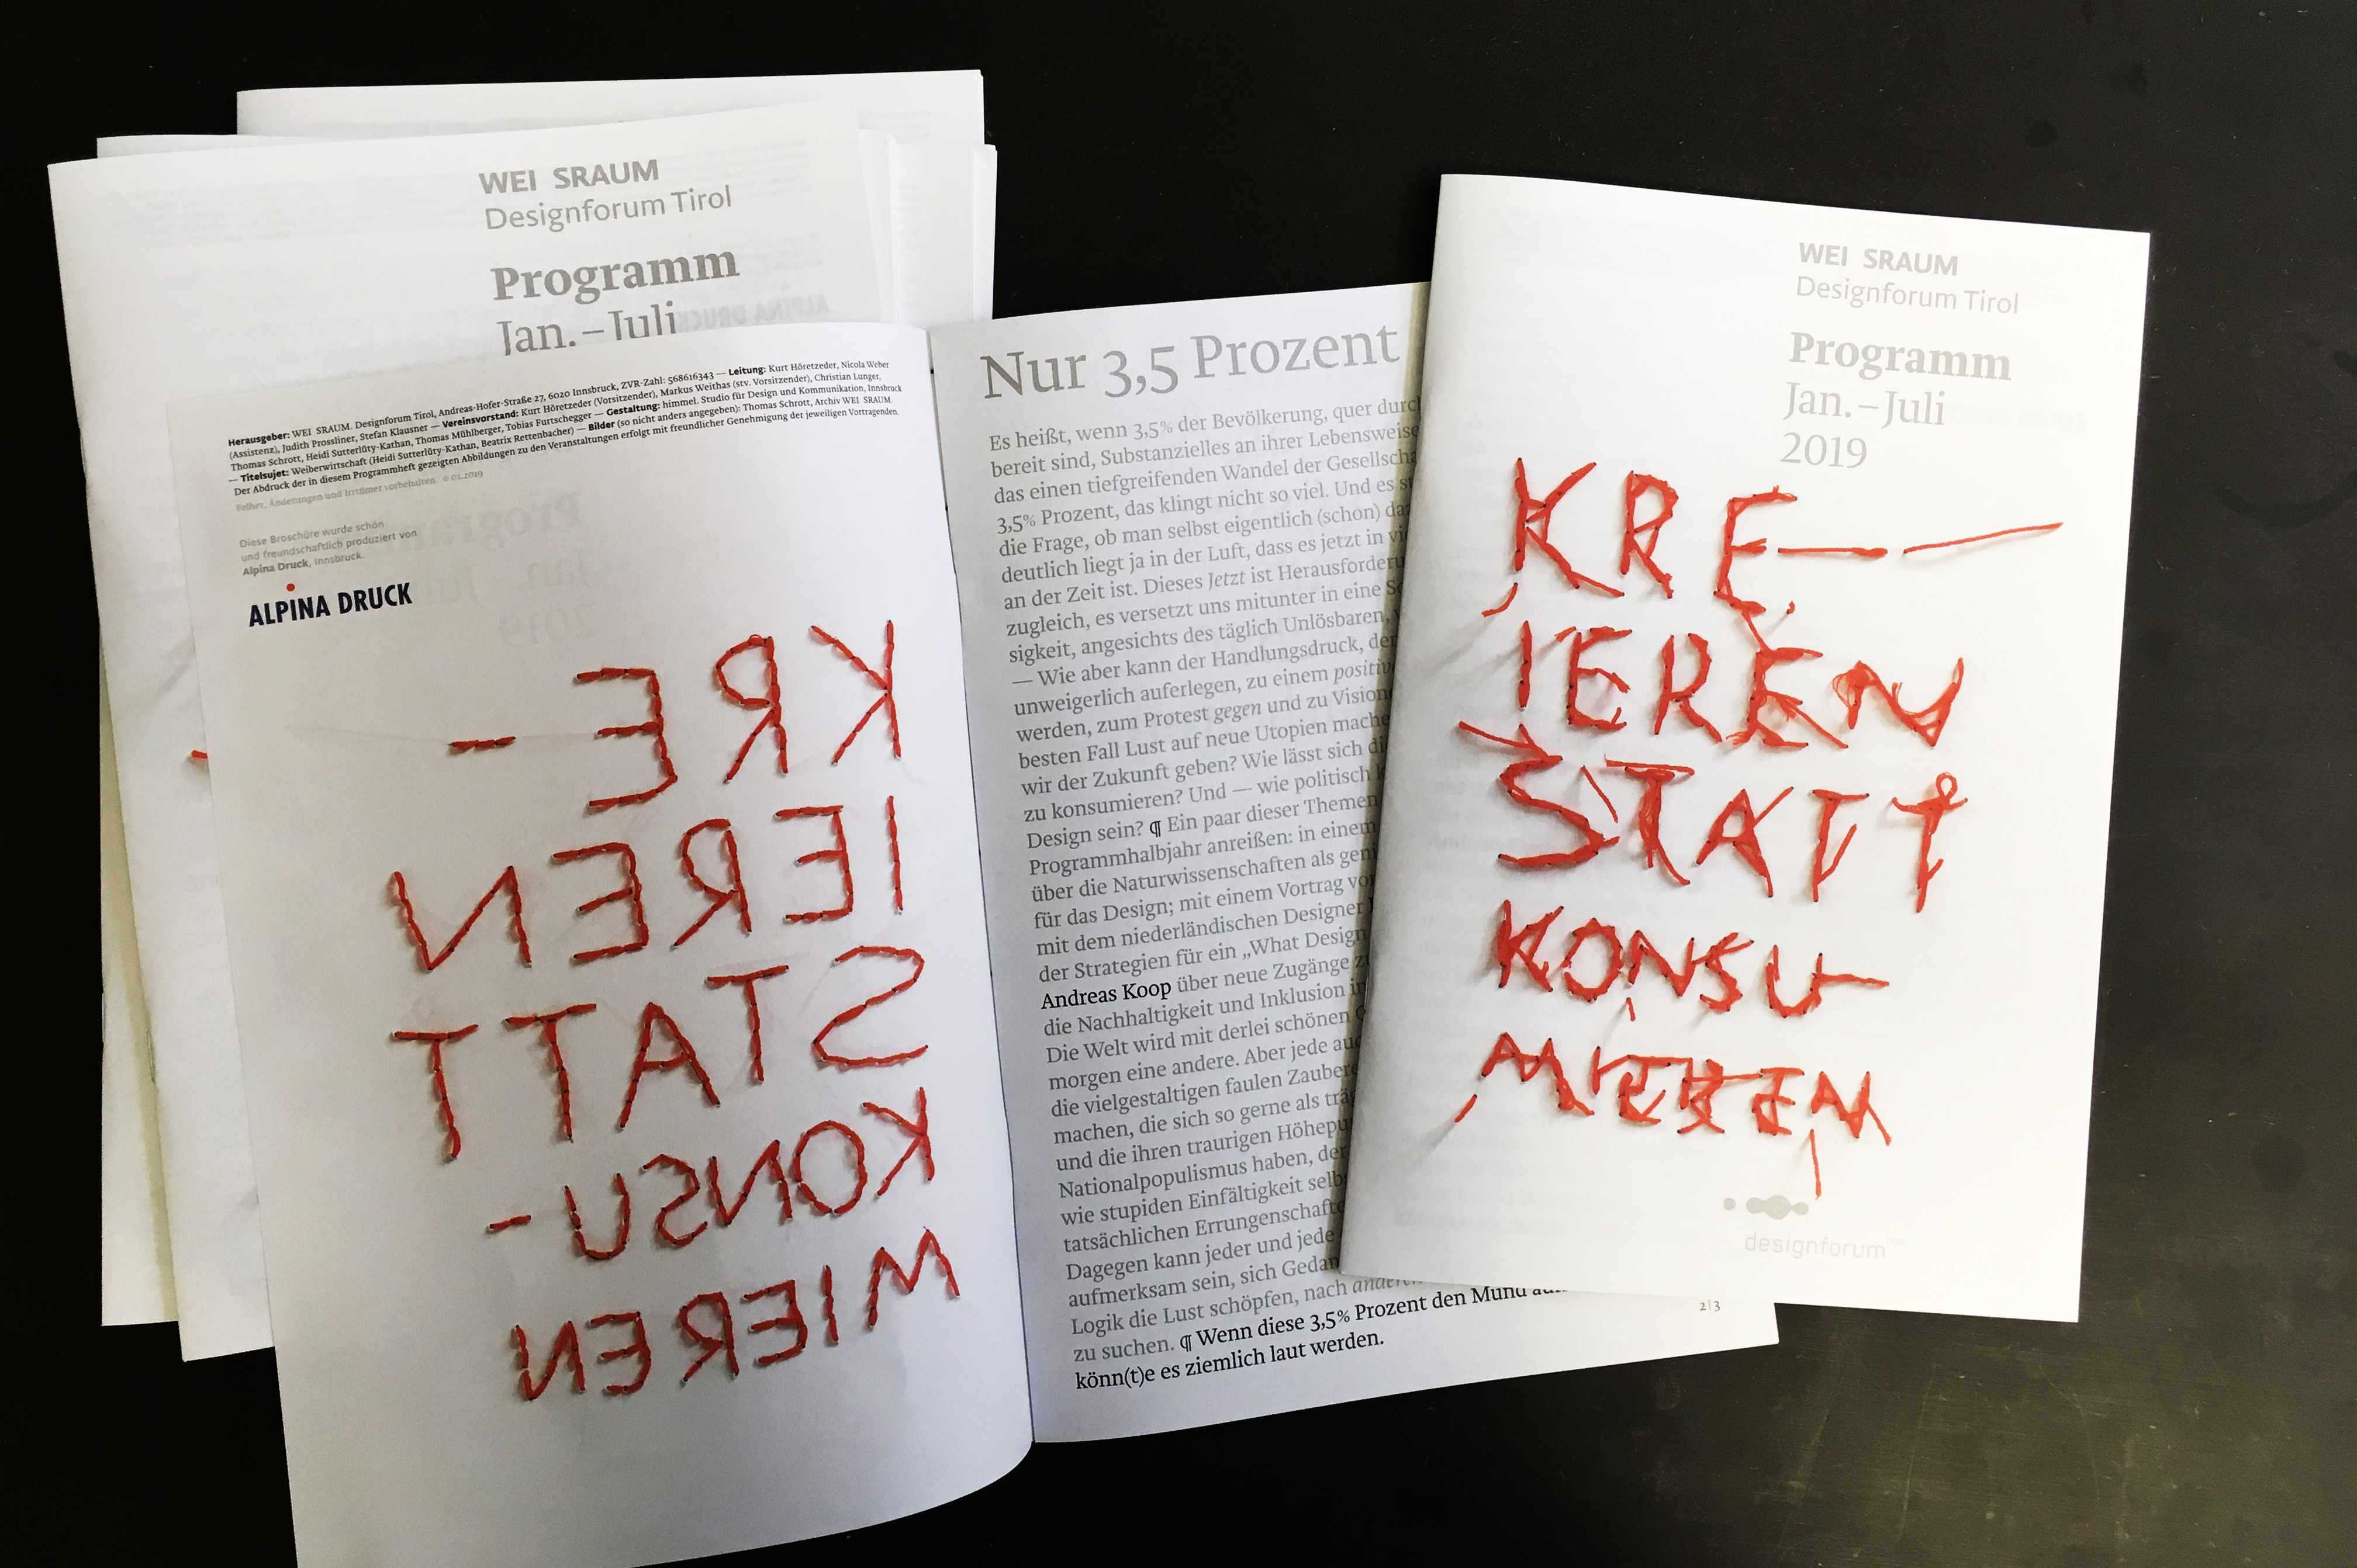 Programhefte 01/2019 cover Weiberwirtschaft 